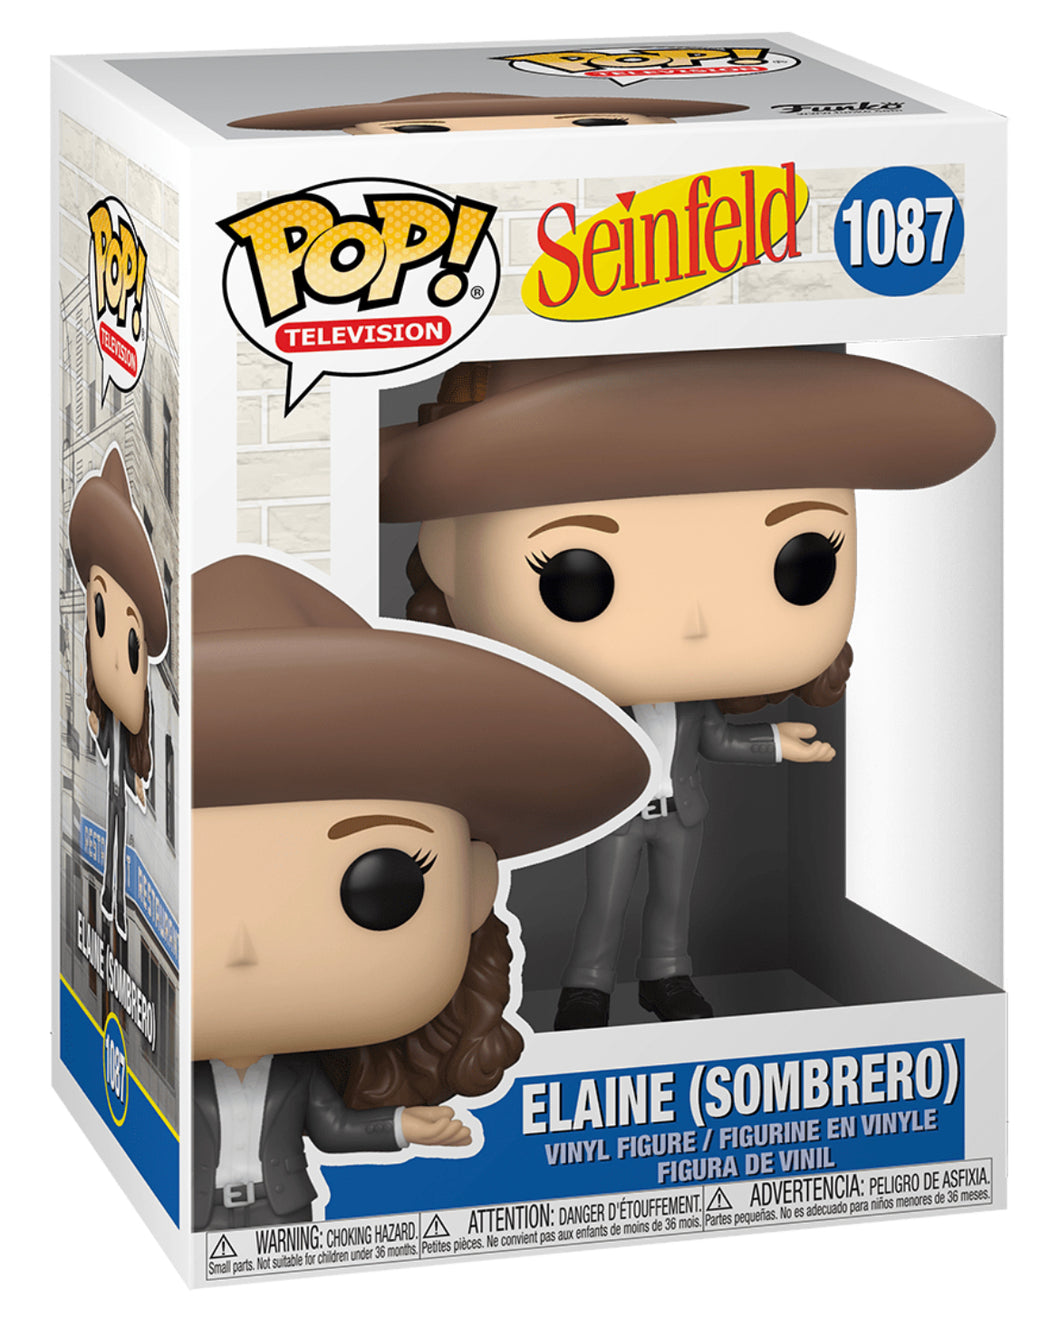 POP! Television: 1087 Seinfeld, Elaine (Sombrero)